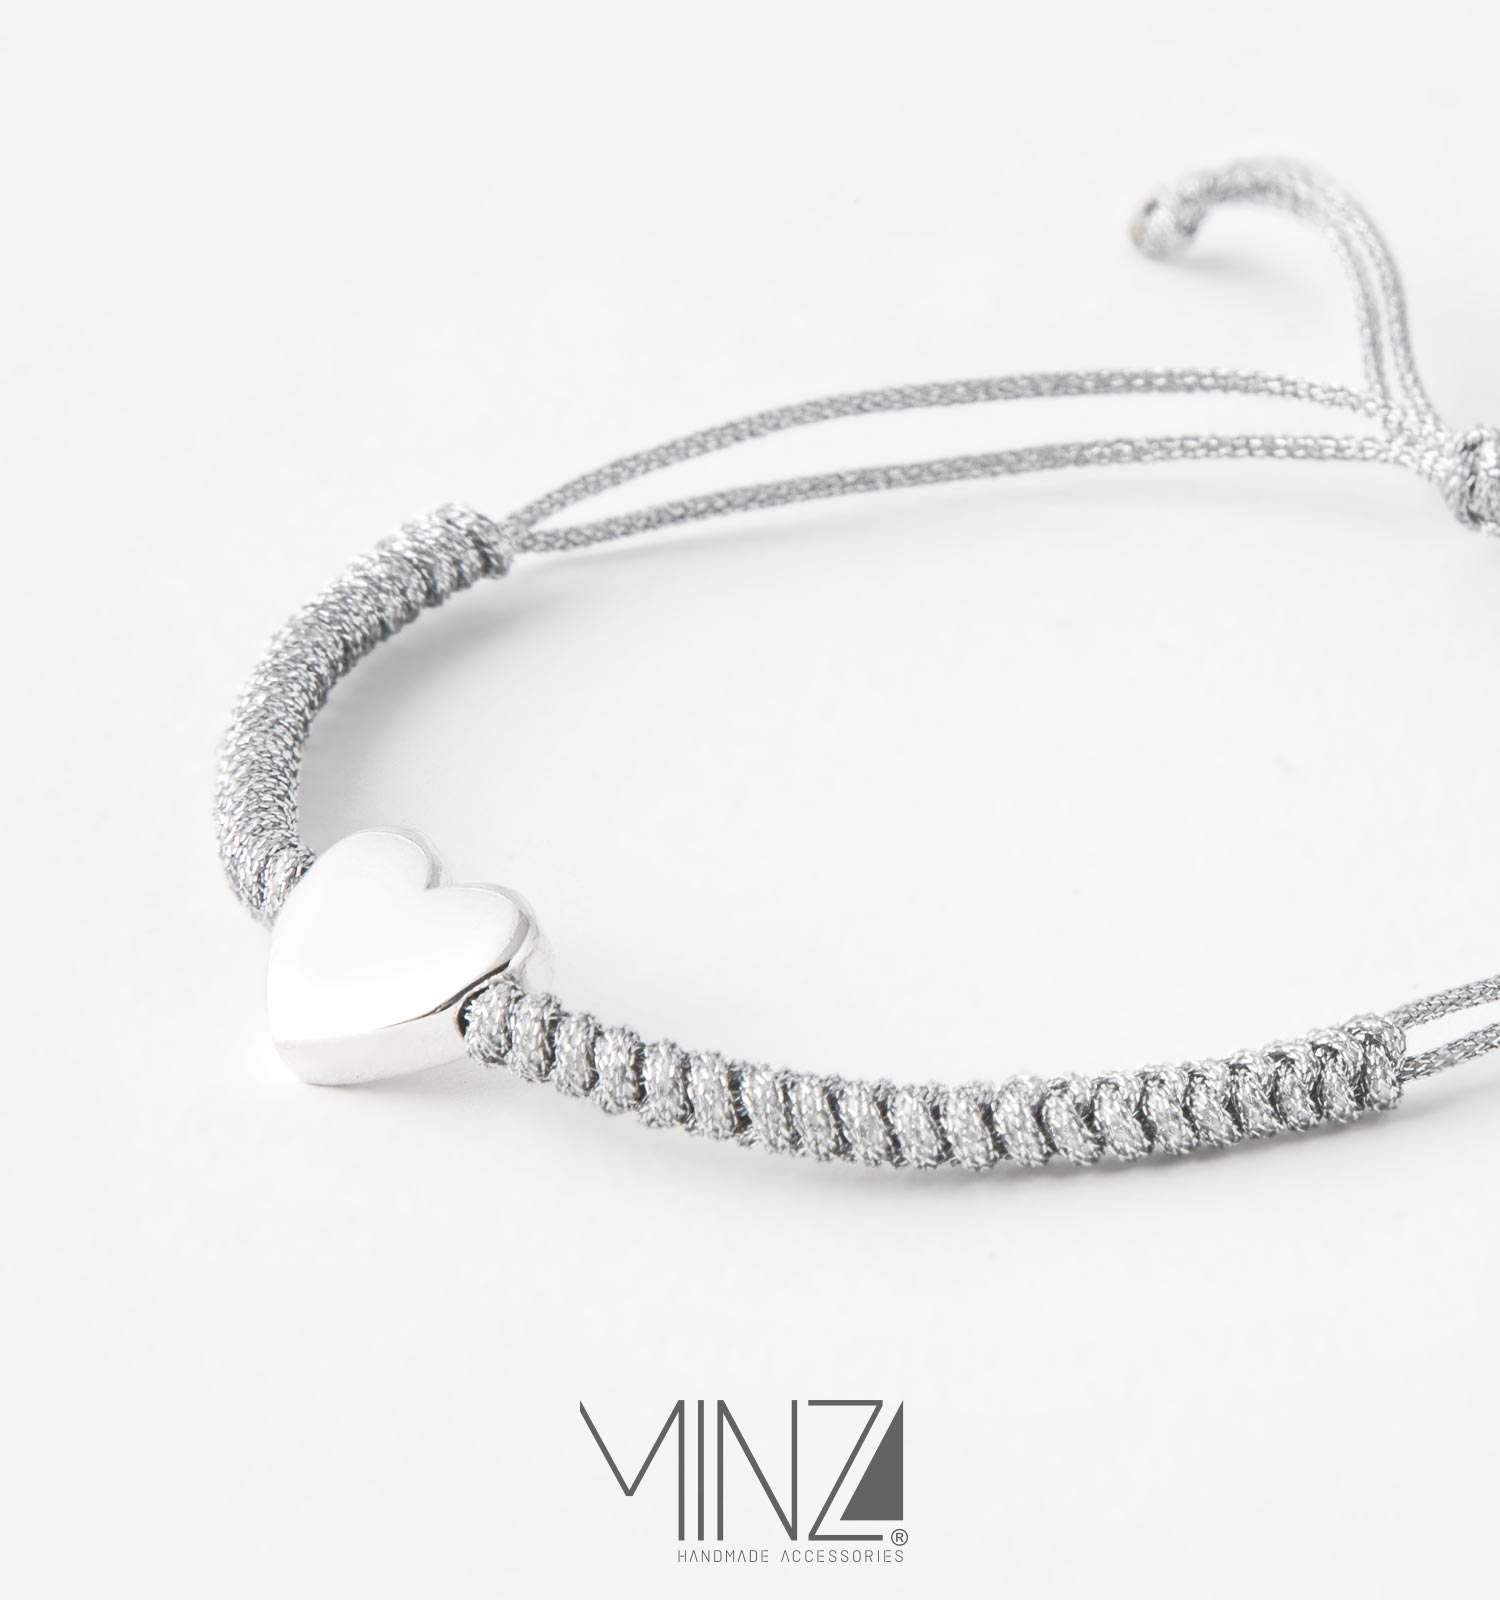 ” Heart ” Silver Bracelet